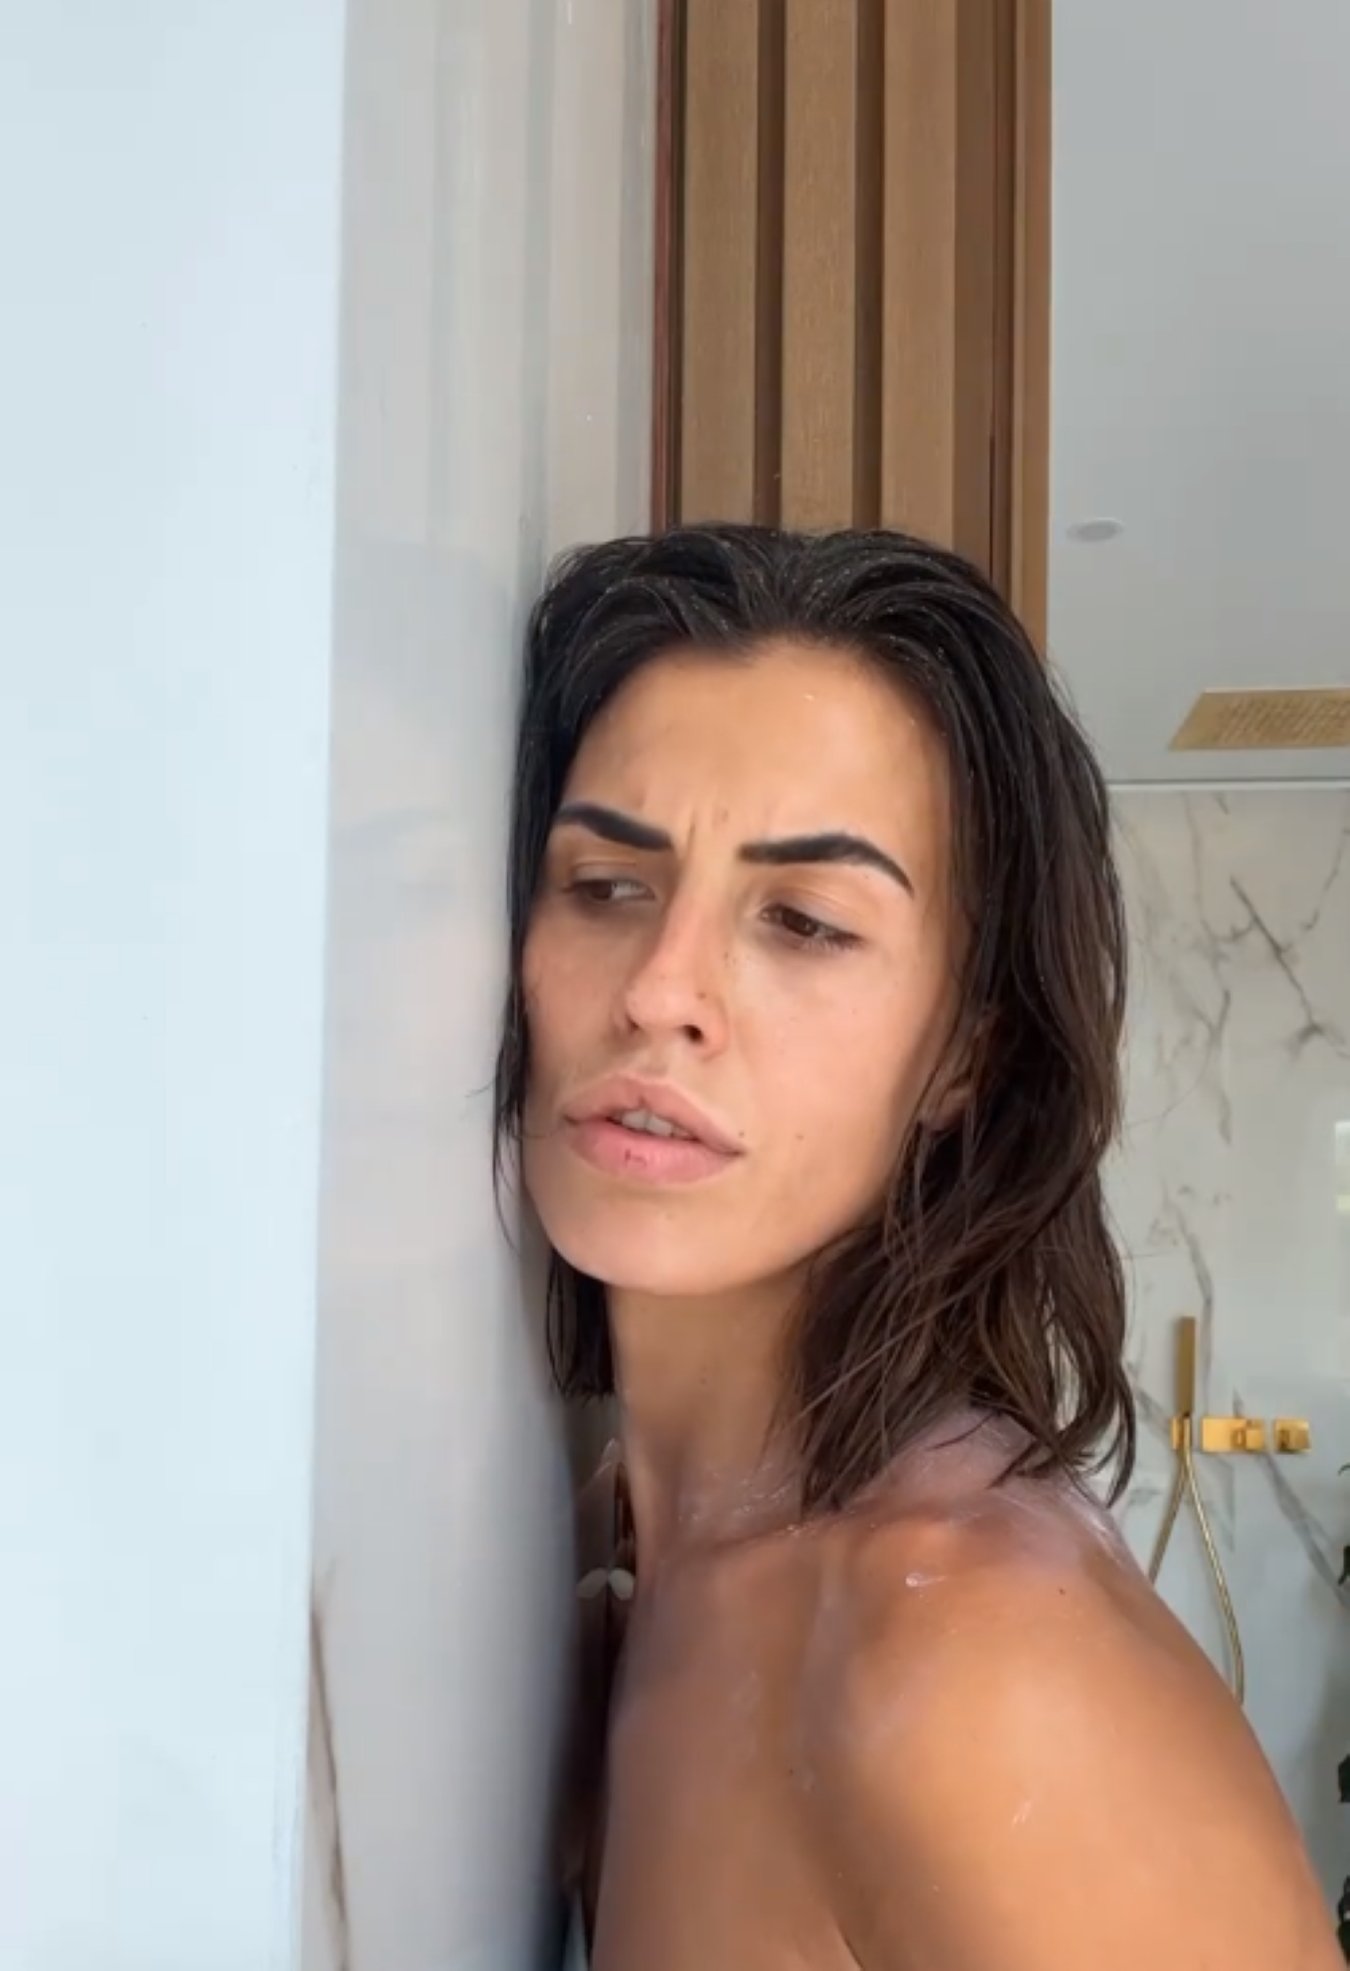 Sofía Suescun, vídeos escandalosos con un famoso que no es su novio